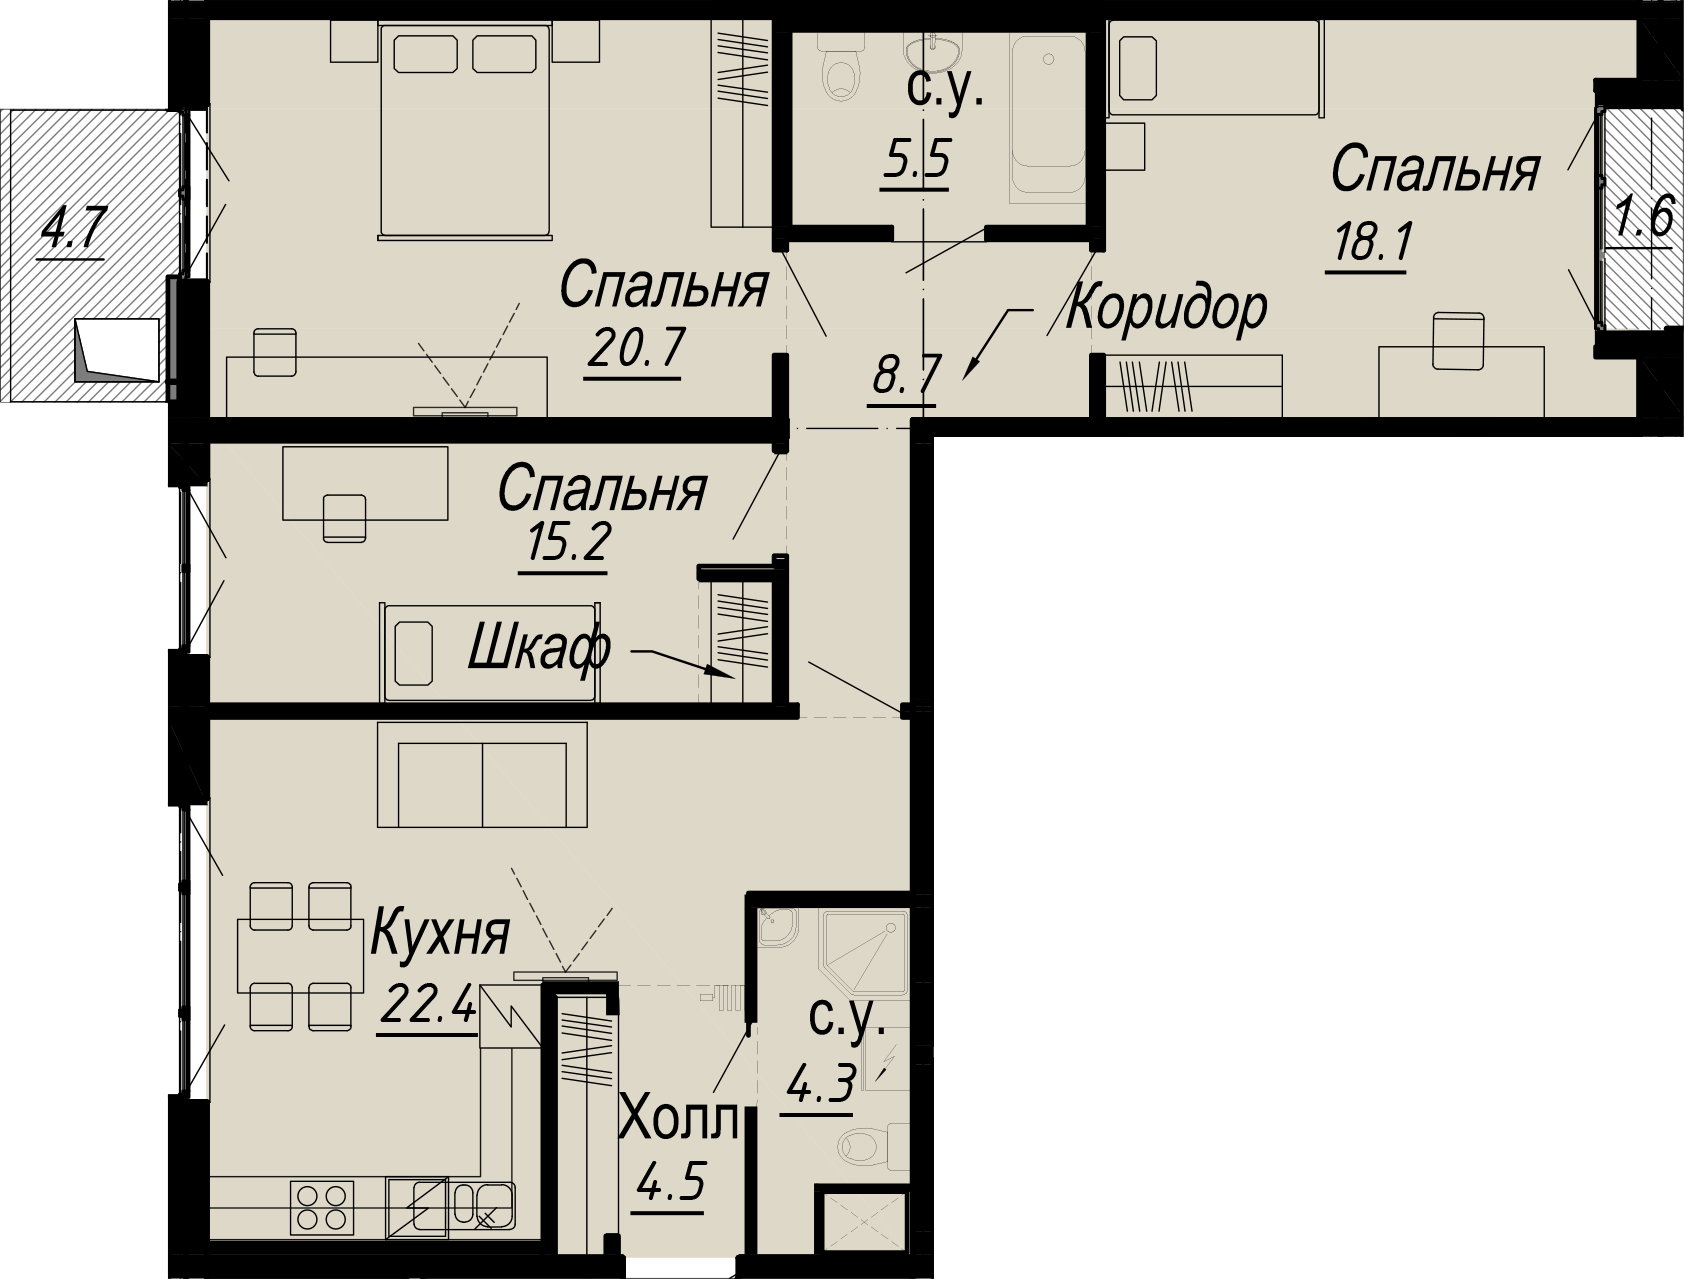 3-комнатная квартира  №10-4 в Meltzer Hall: 102.74 м², этаж 4 - купить в Санкт-Петербурге